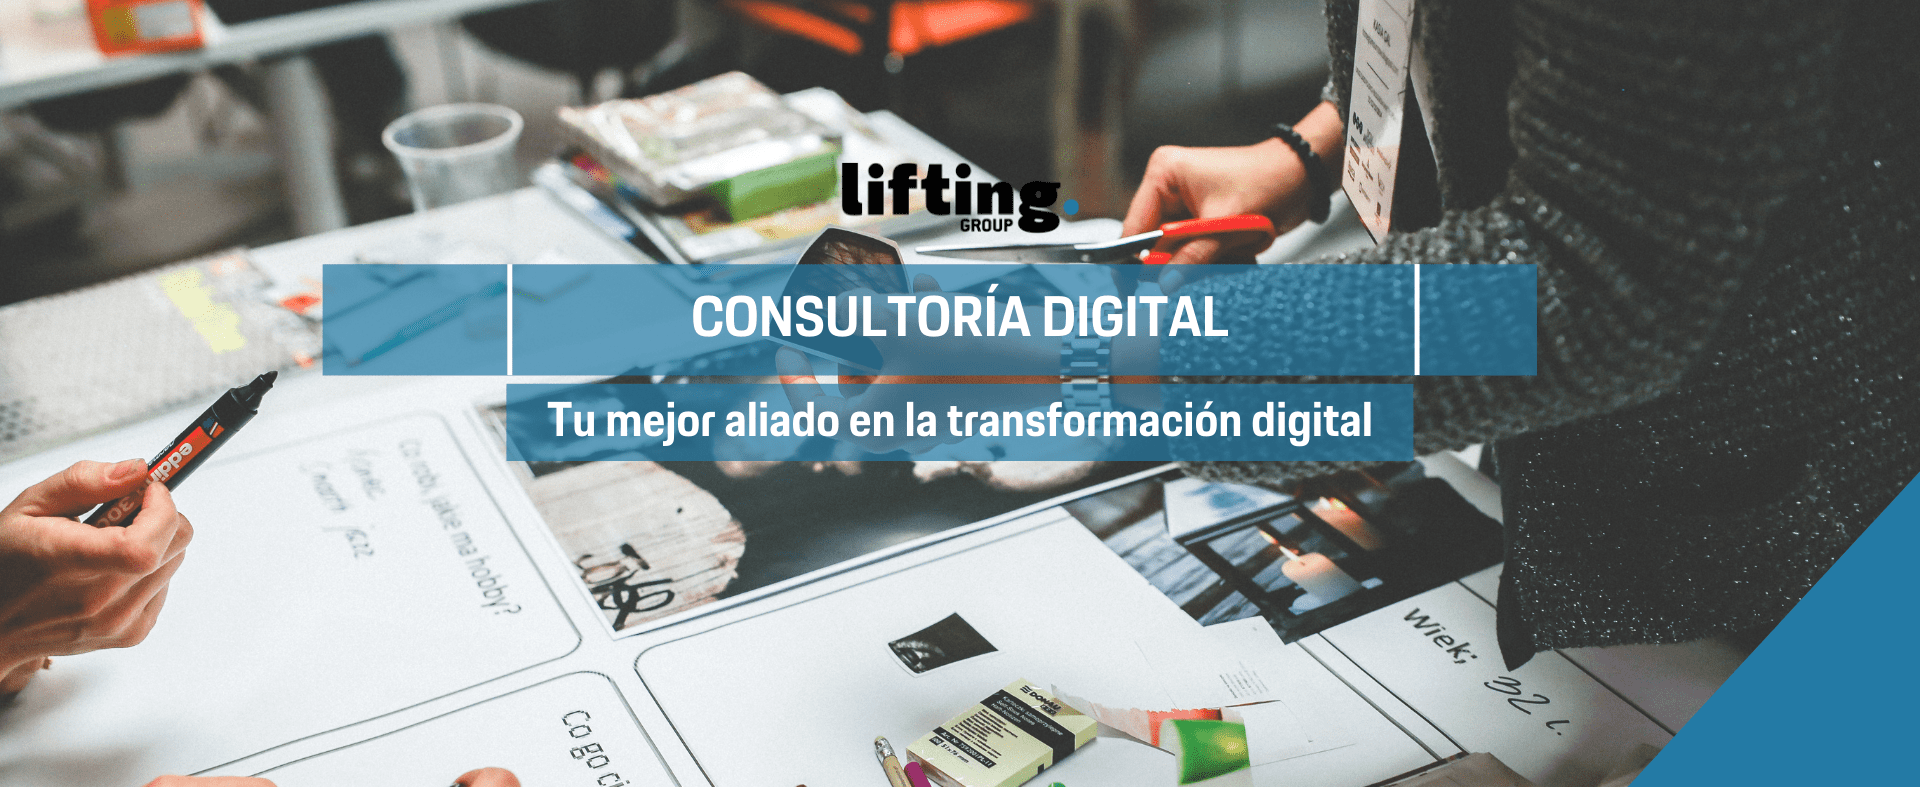 Consultoría digital: Tu mejor aliado en la transformación digital